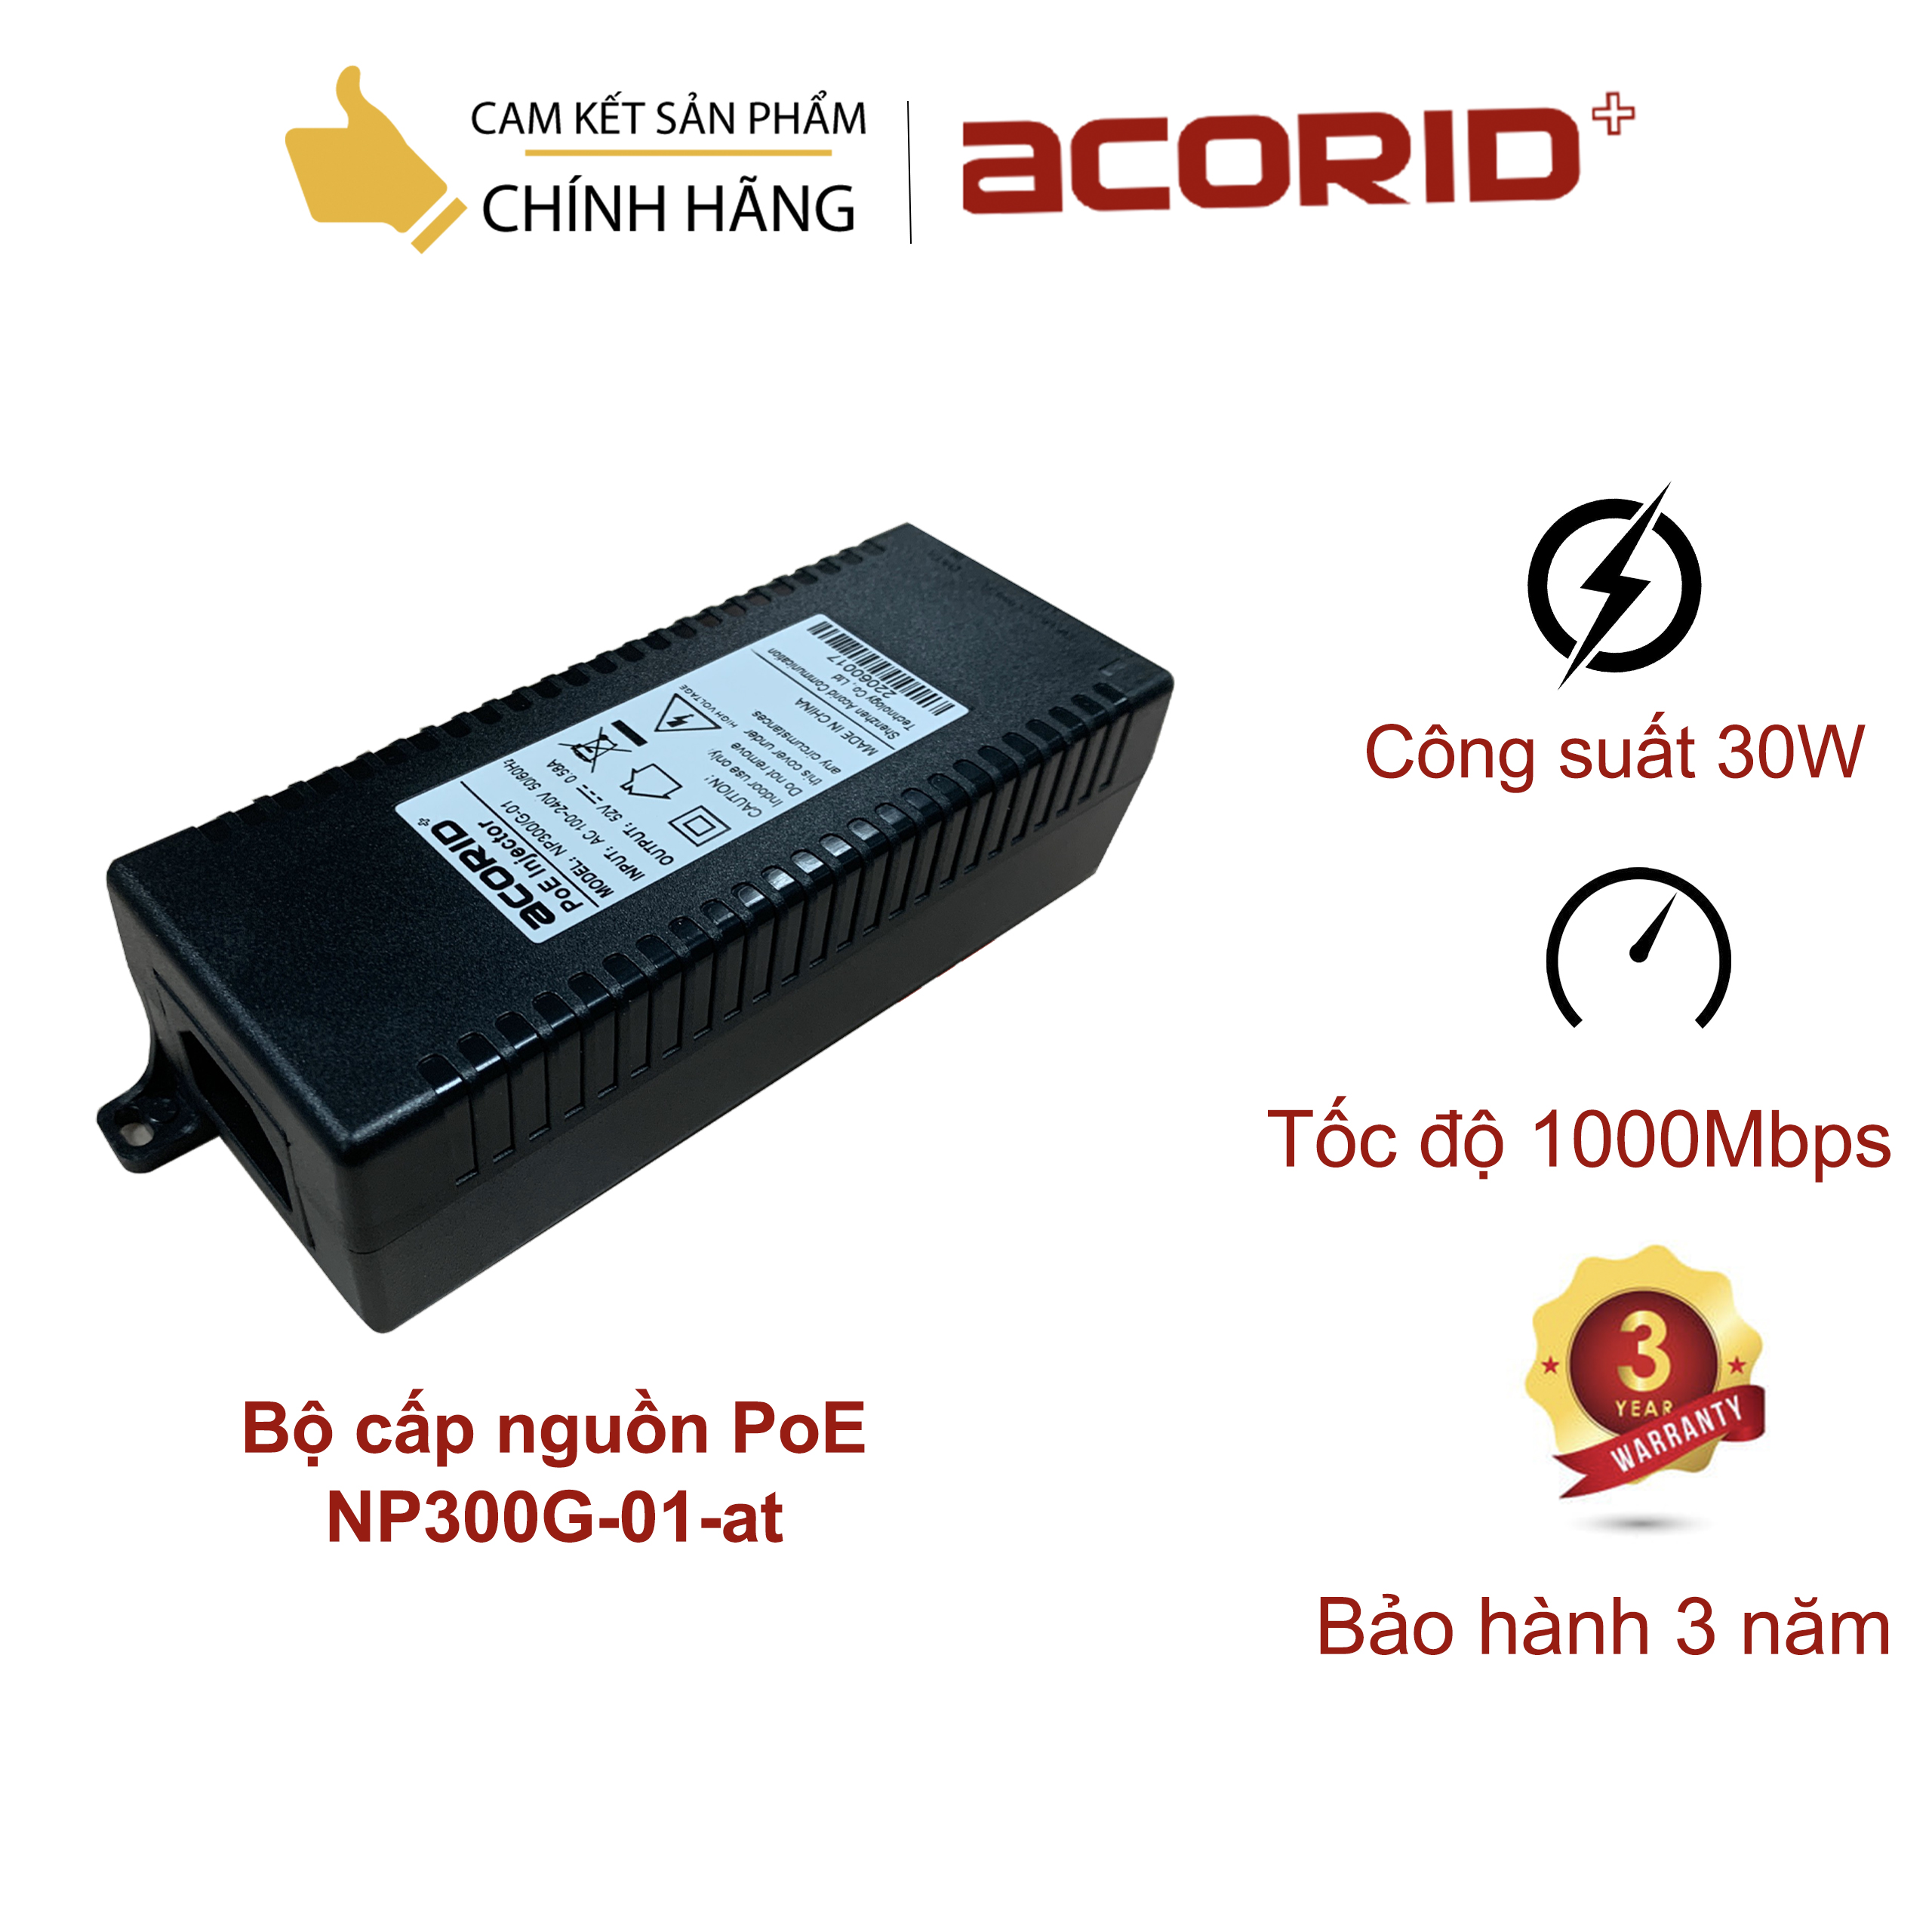 Bộ cấp nguồn PoE 30W cho camera/wifi 1 cổng tốc độ 1000M Acorid NP300G-01-at - Hàng chính hãng